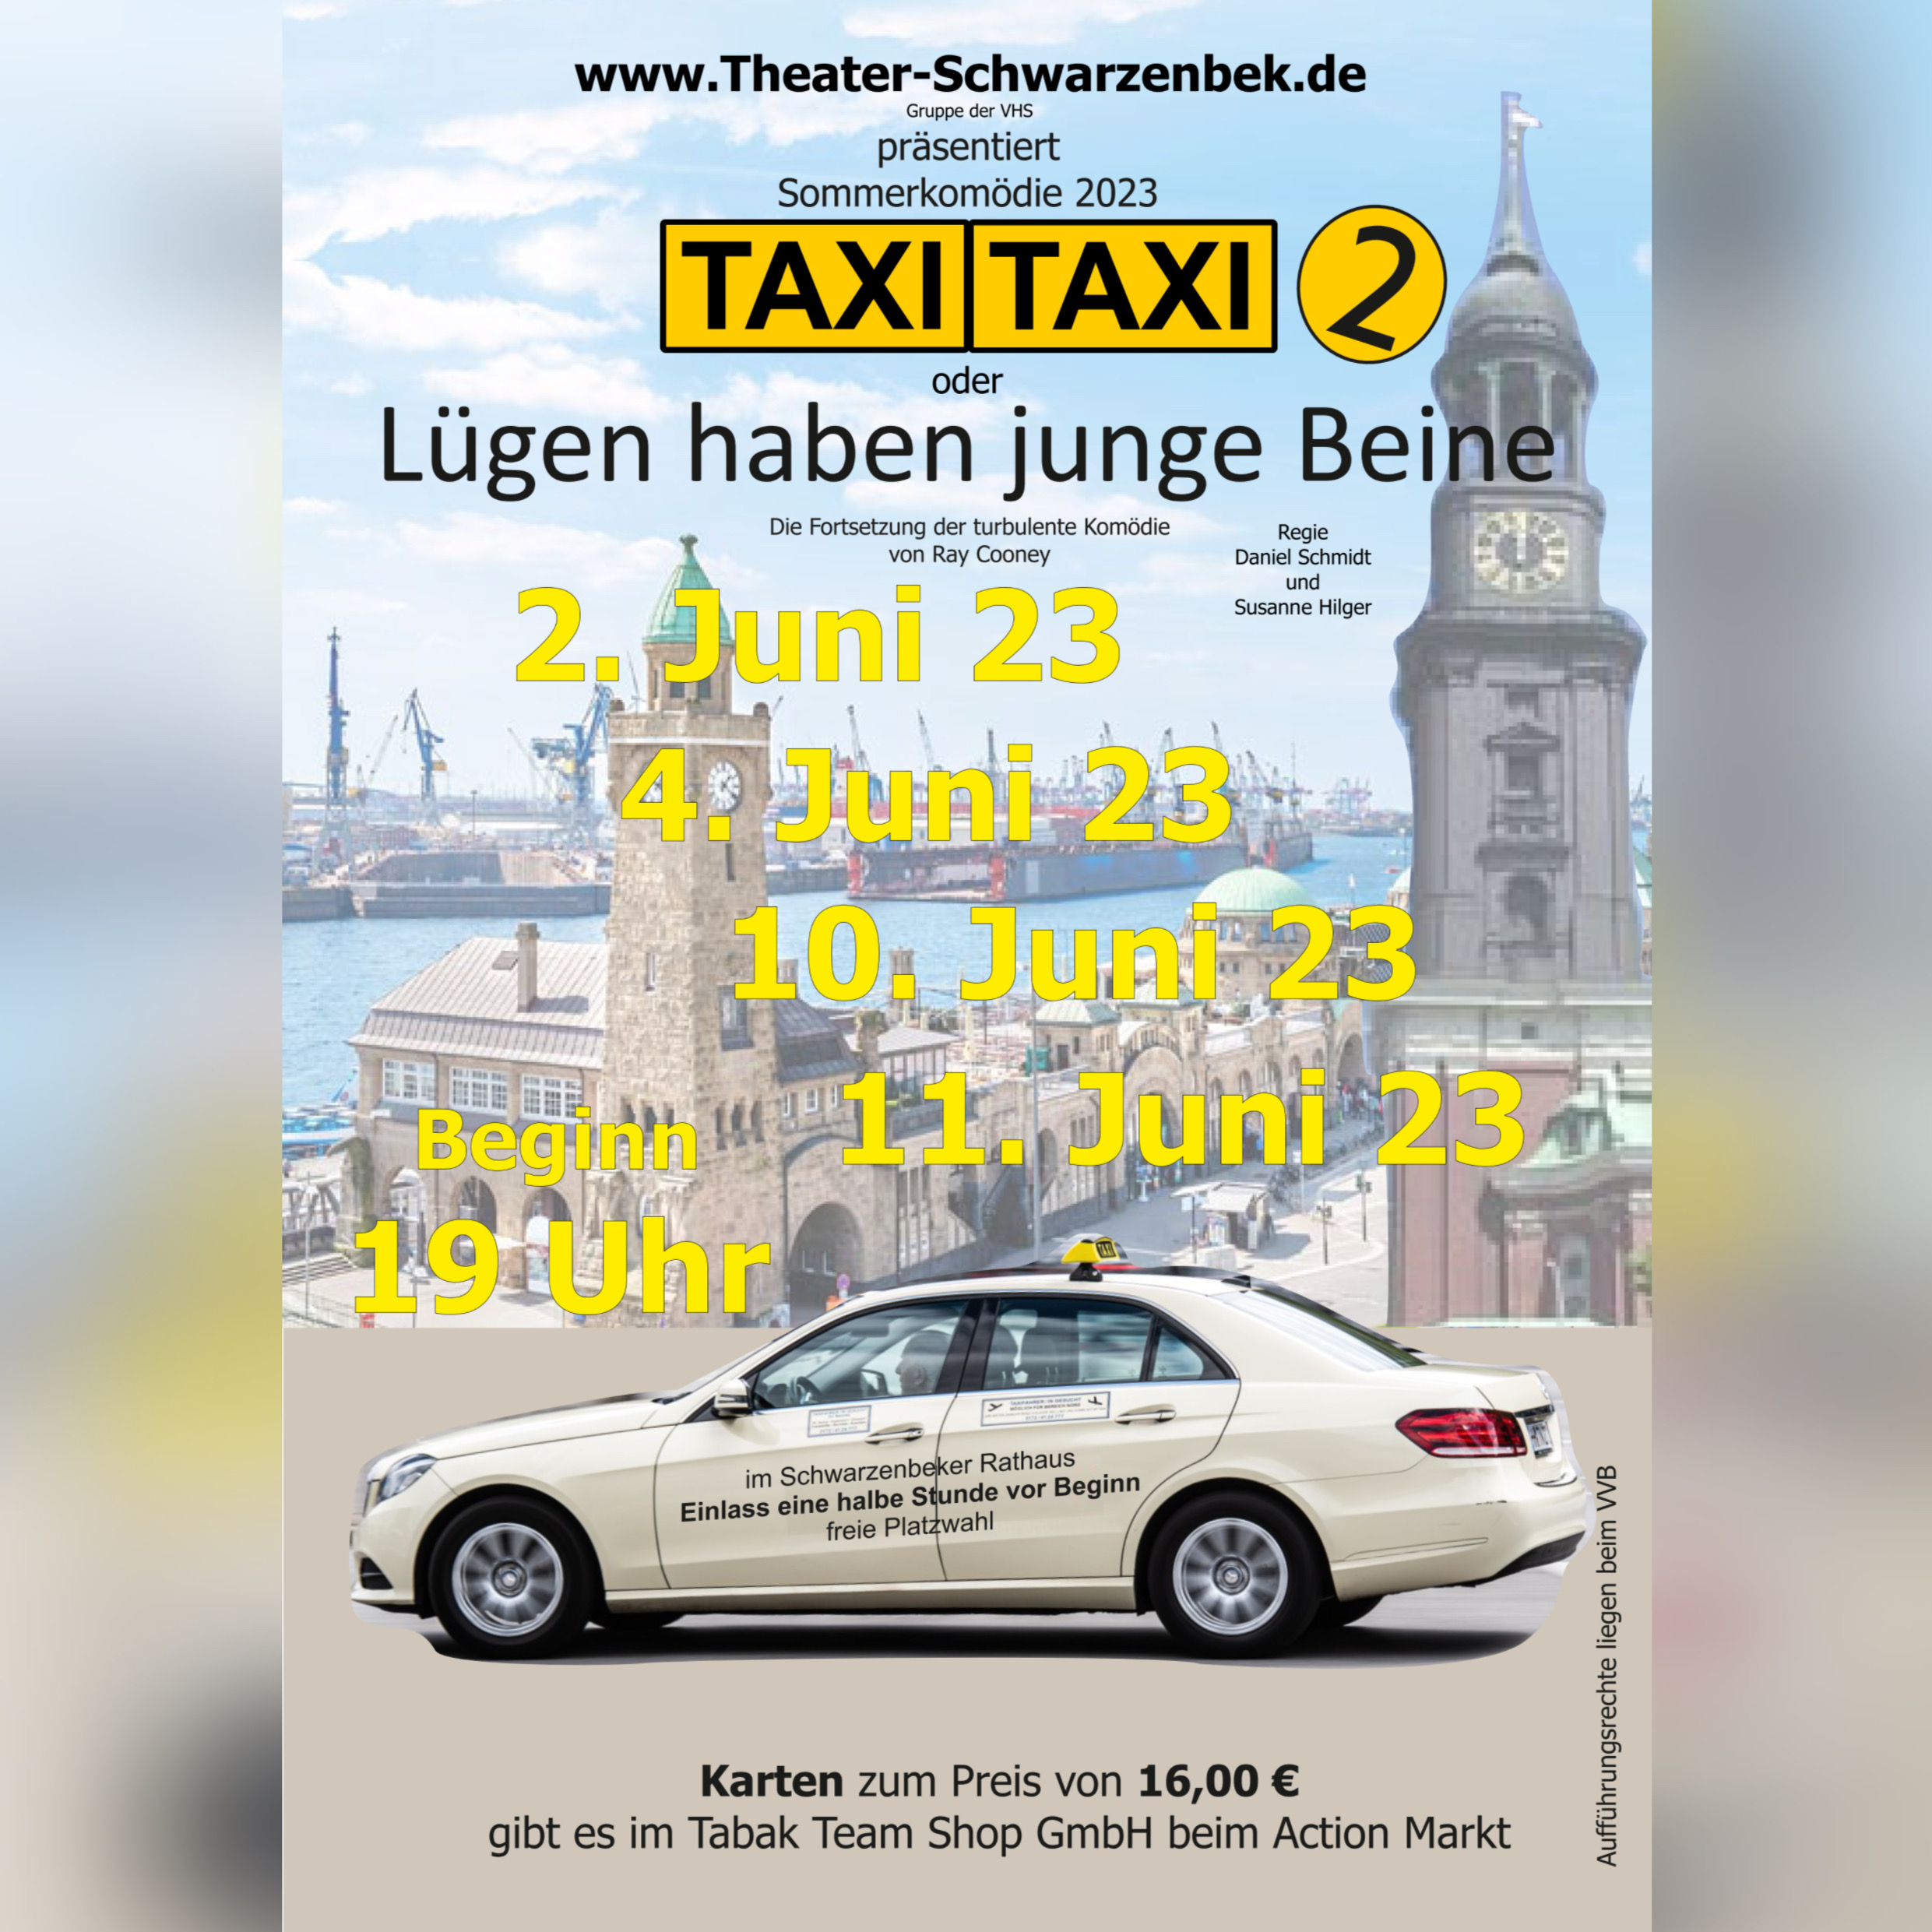 Taxi Taxi 2 Theater Schwarzenbek